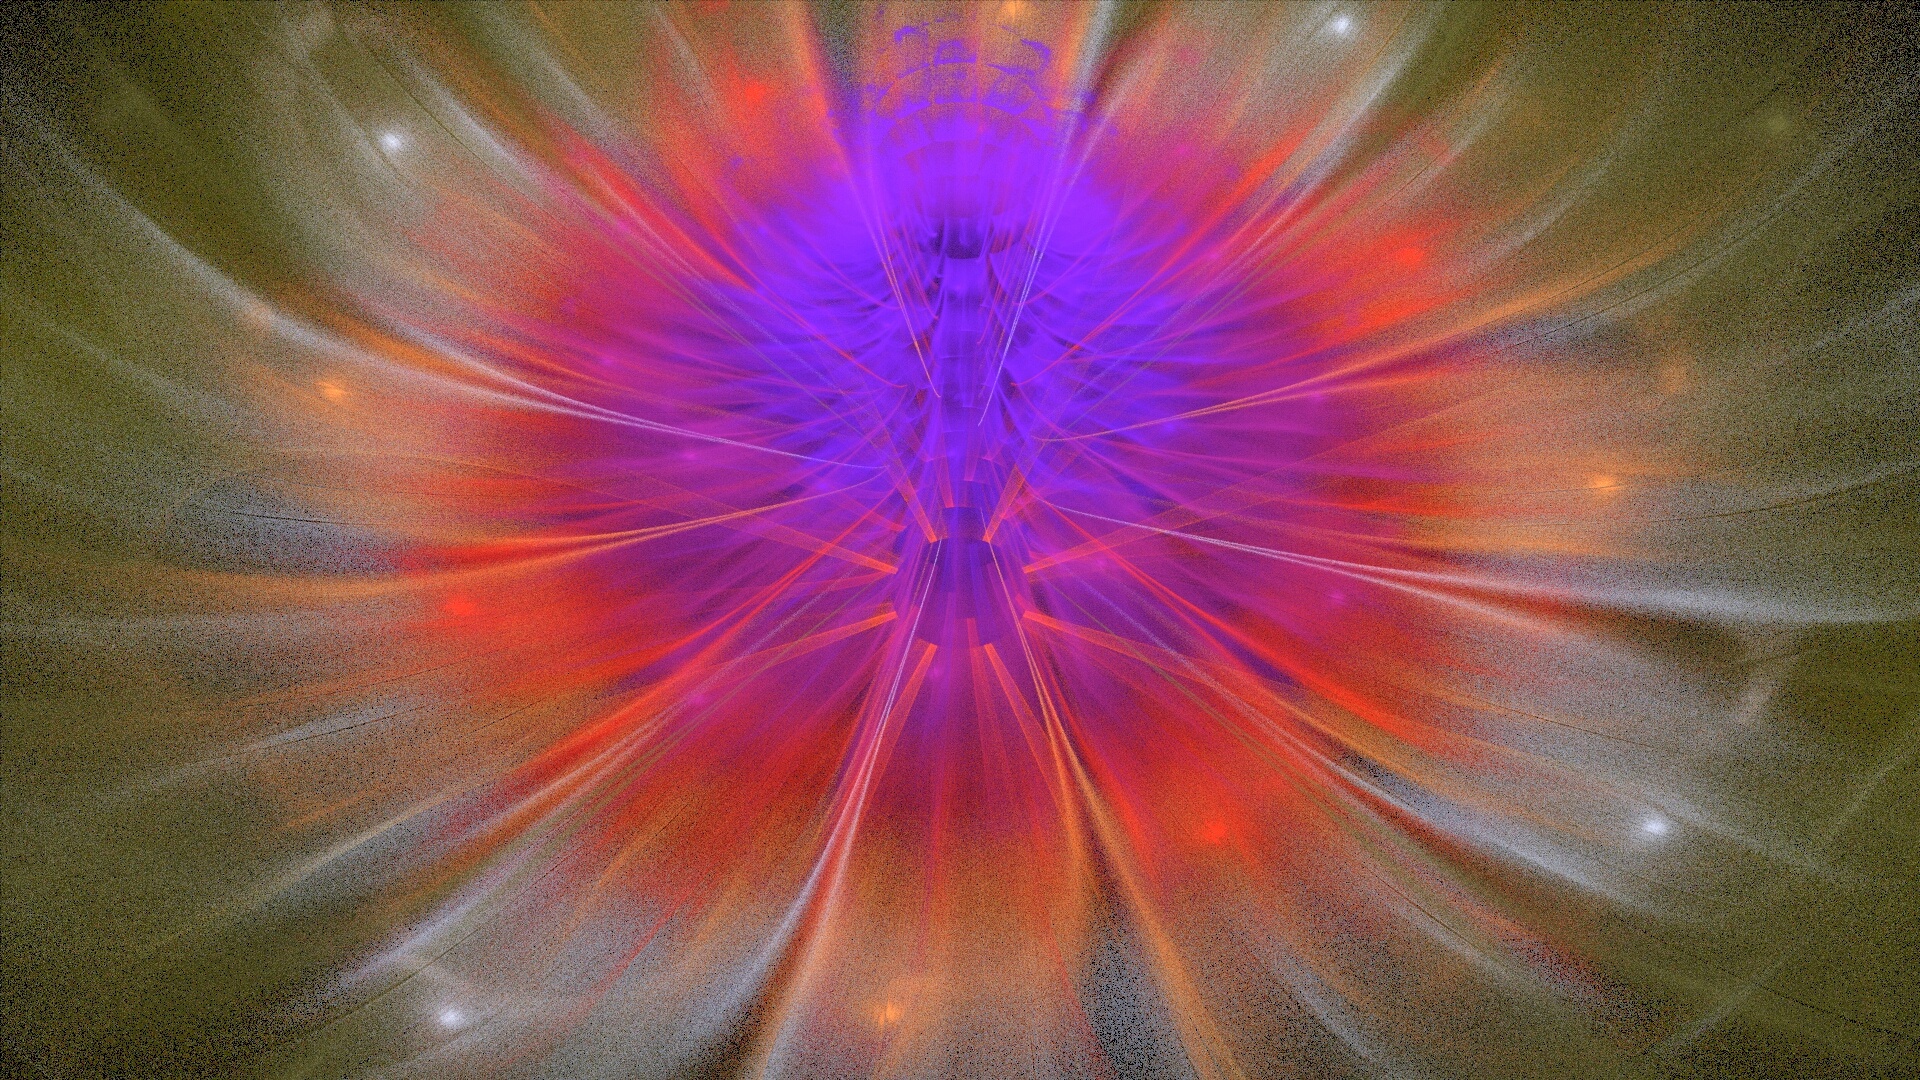 fractal violet flower free photo